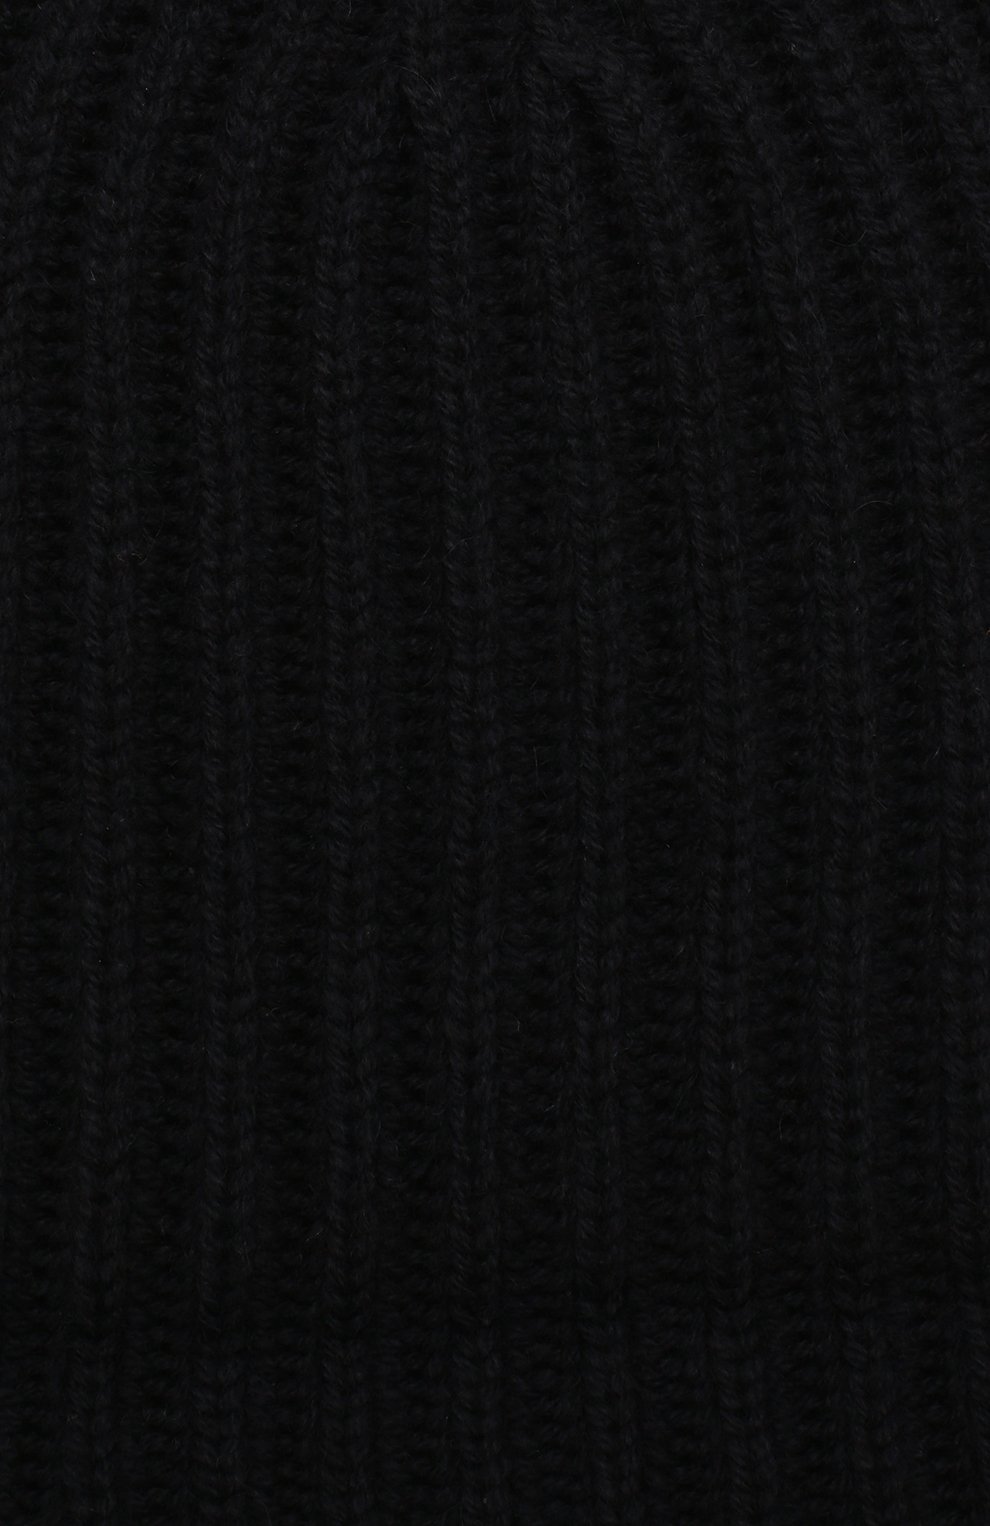 Детского кашемировая шапка LORO PIANA темно-синего цвета, арт. FAF8492 | Фото 3 (Материал: Текстиль, Кашемир, Шерсть; Статус проверки: Проверено, Проверена категория)